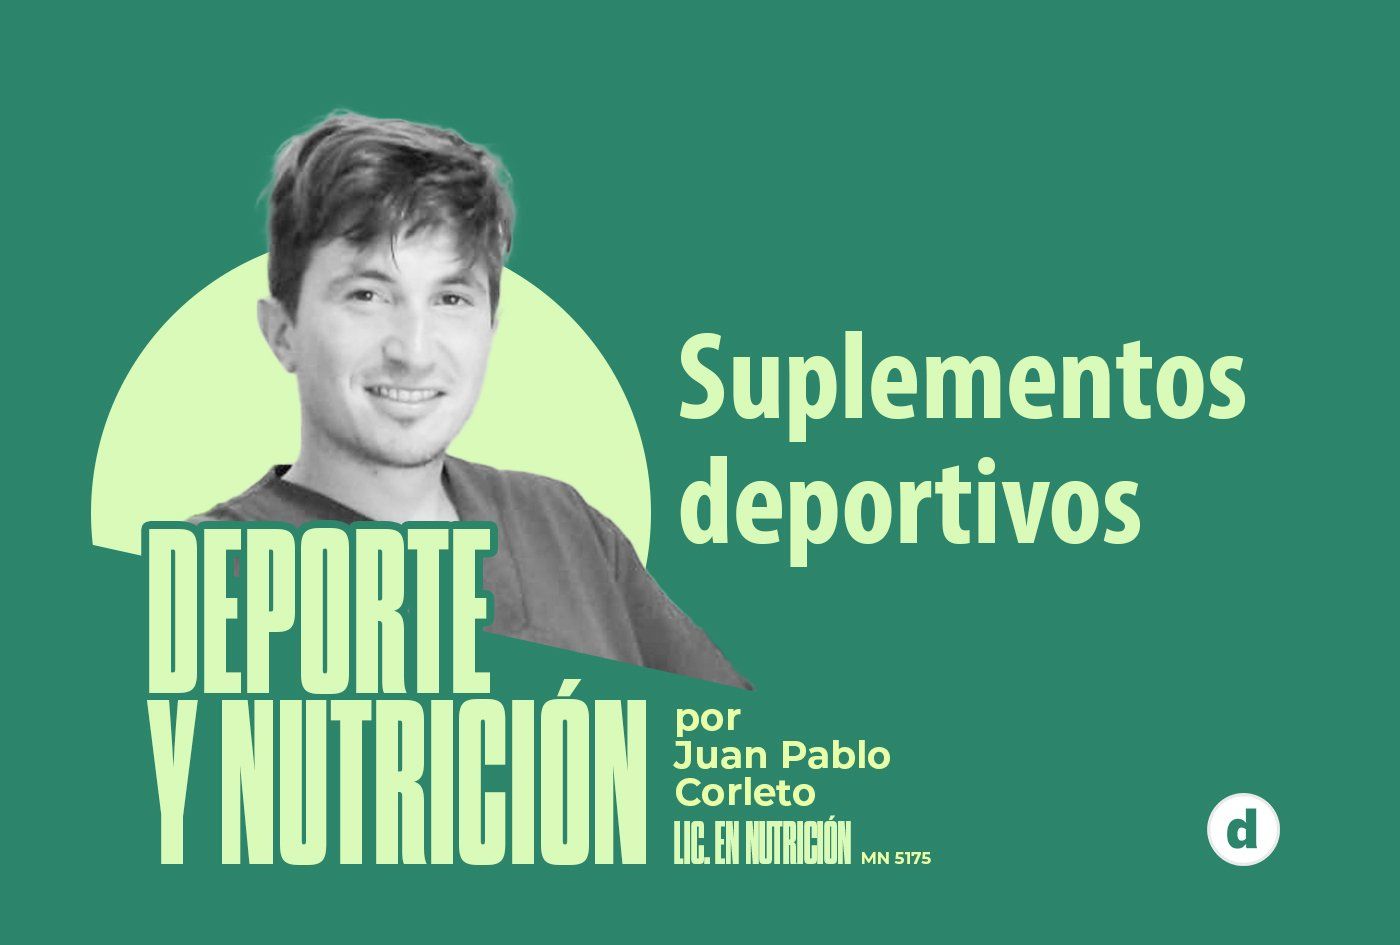 La columna del nutricionista Juan Pablo Corleto: “Suplementos deportivos”